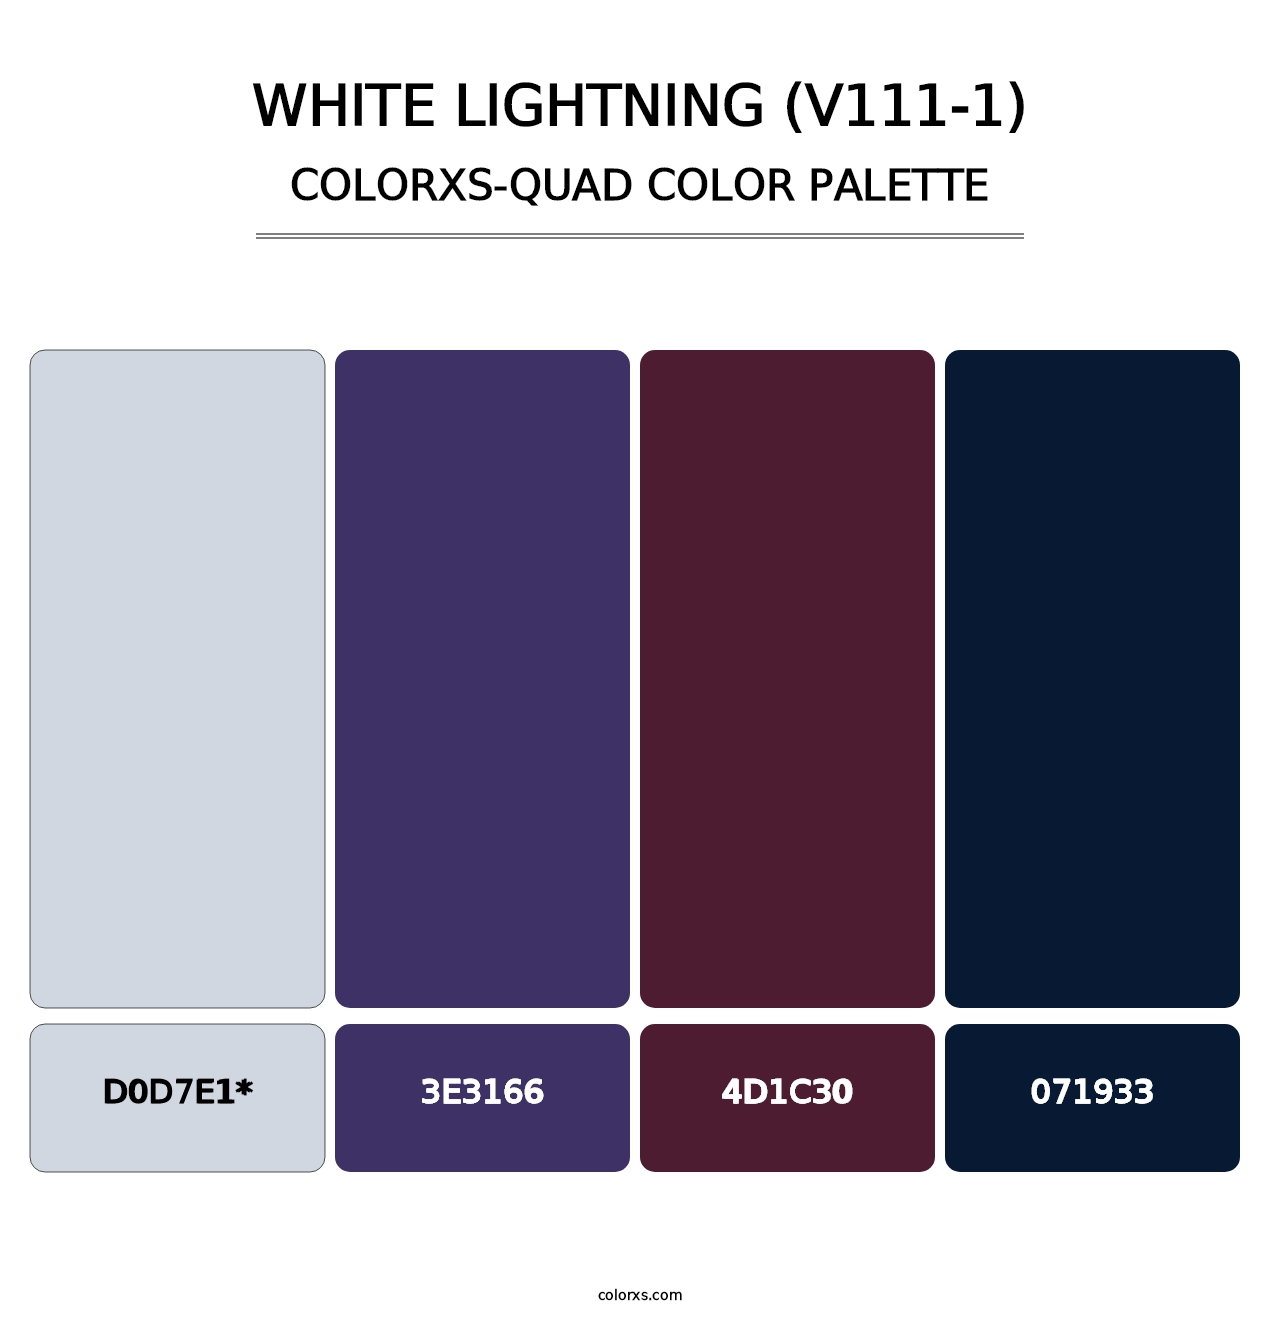 White Lightning (V111-1) - Colorxs Quad Palette